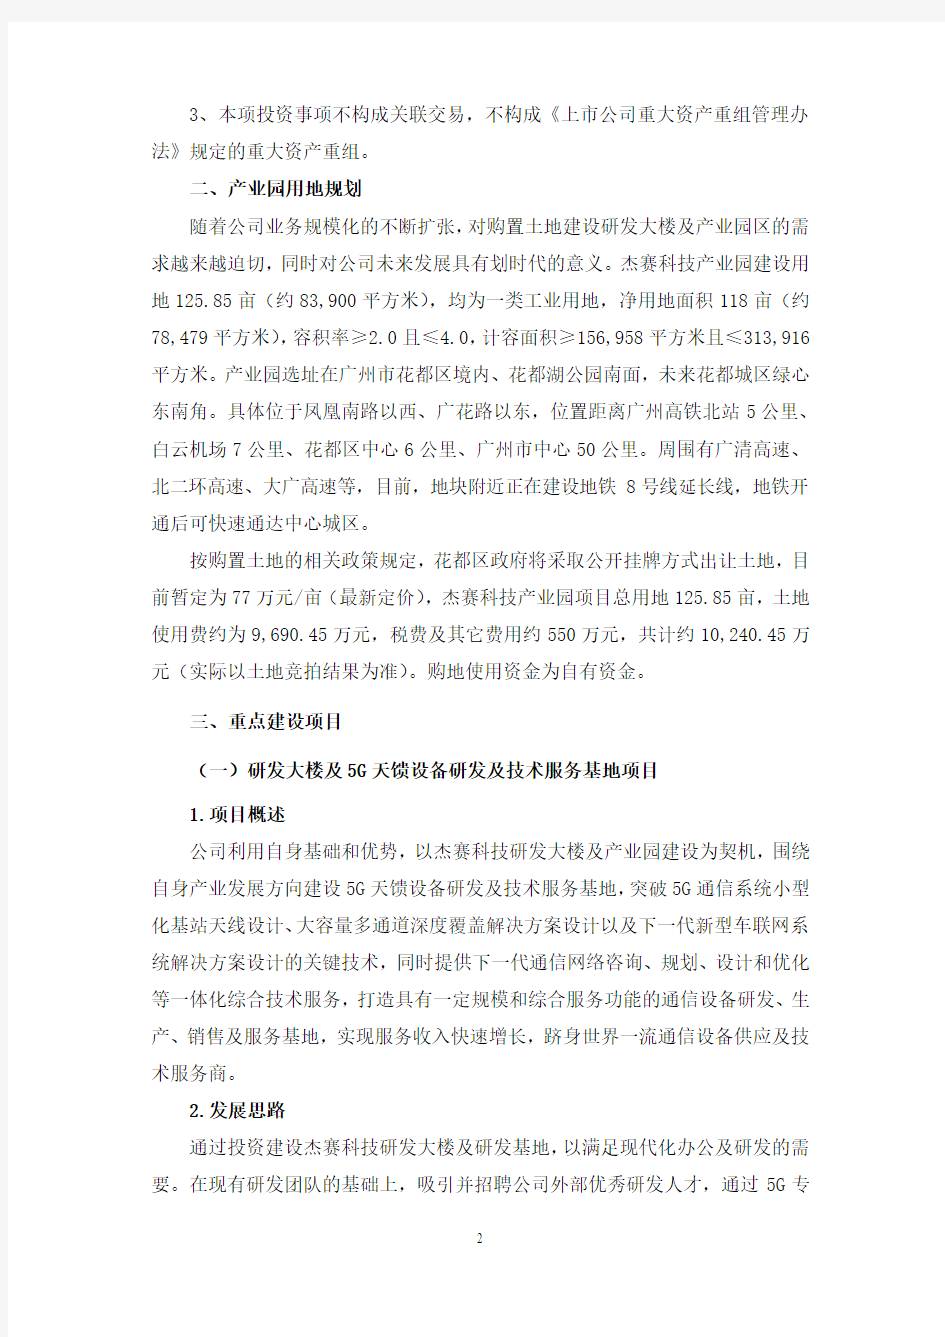 广州杰赛科技股份有限公司关于投资建设杰赛科技产业园的公